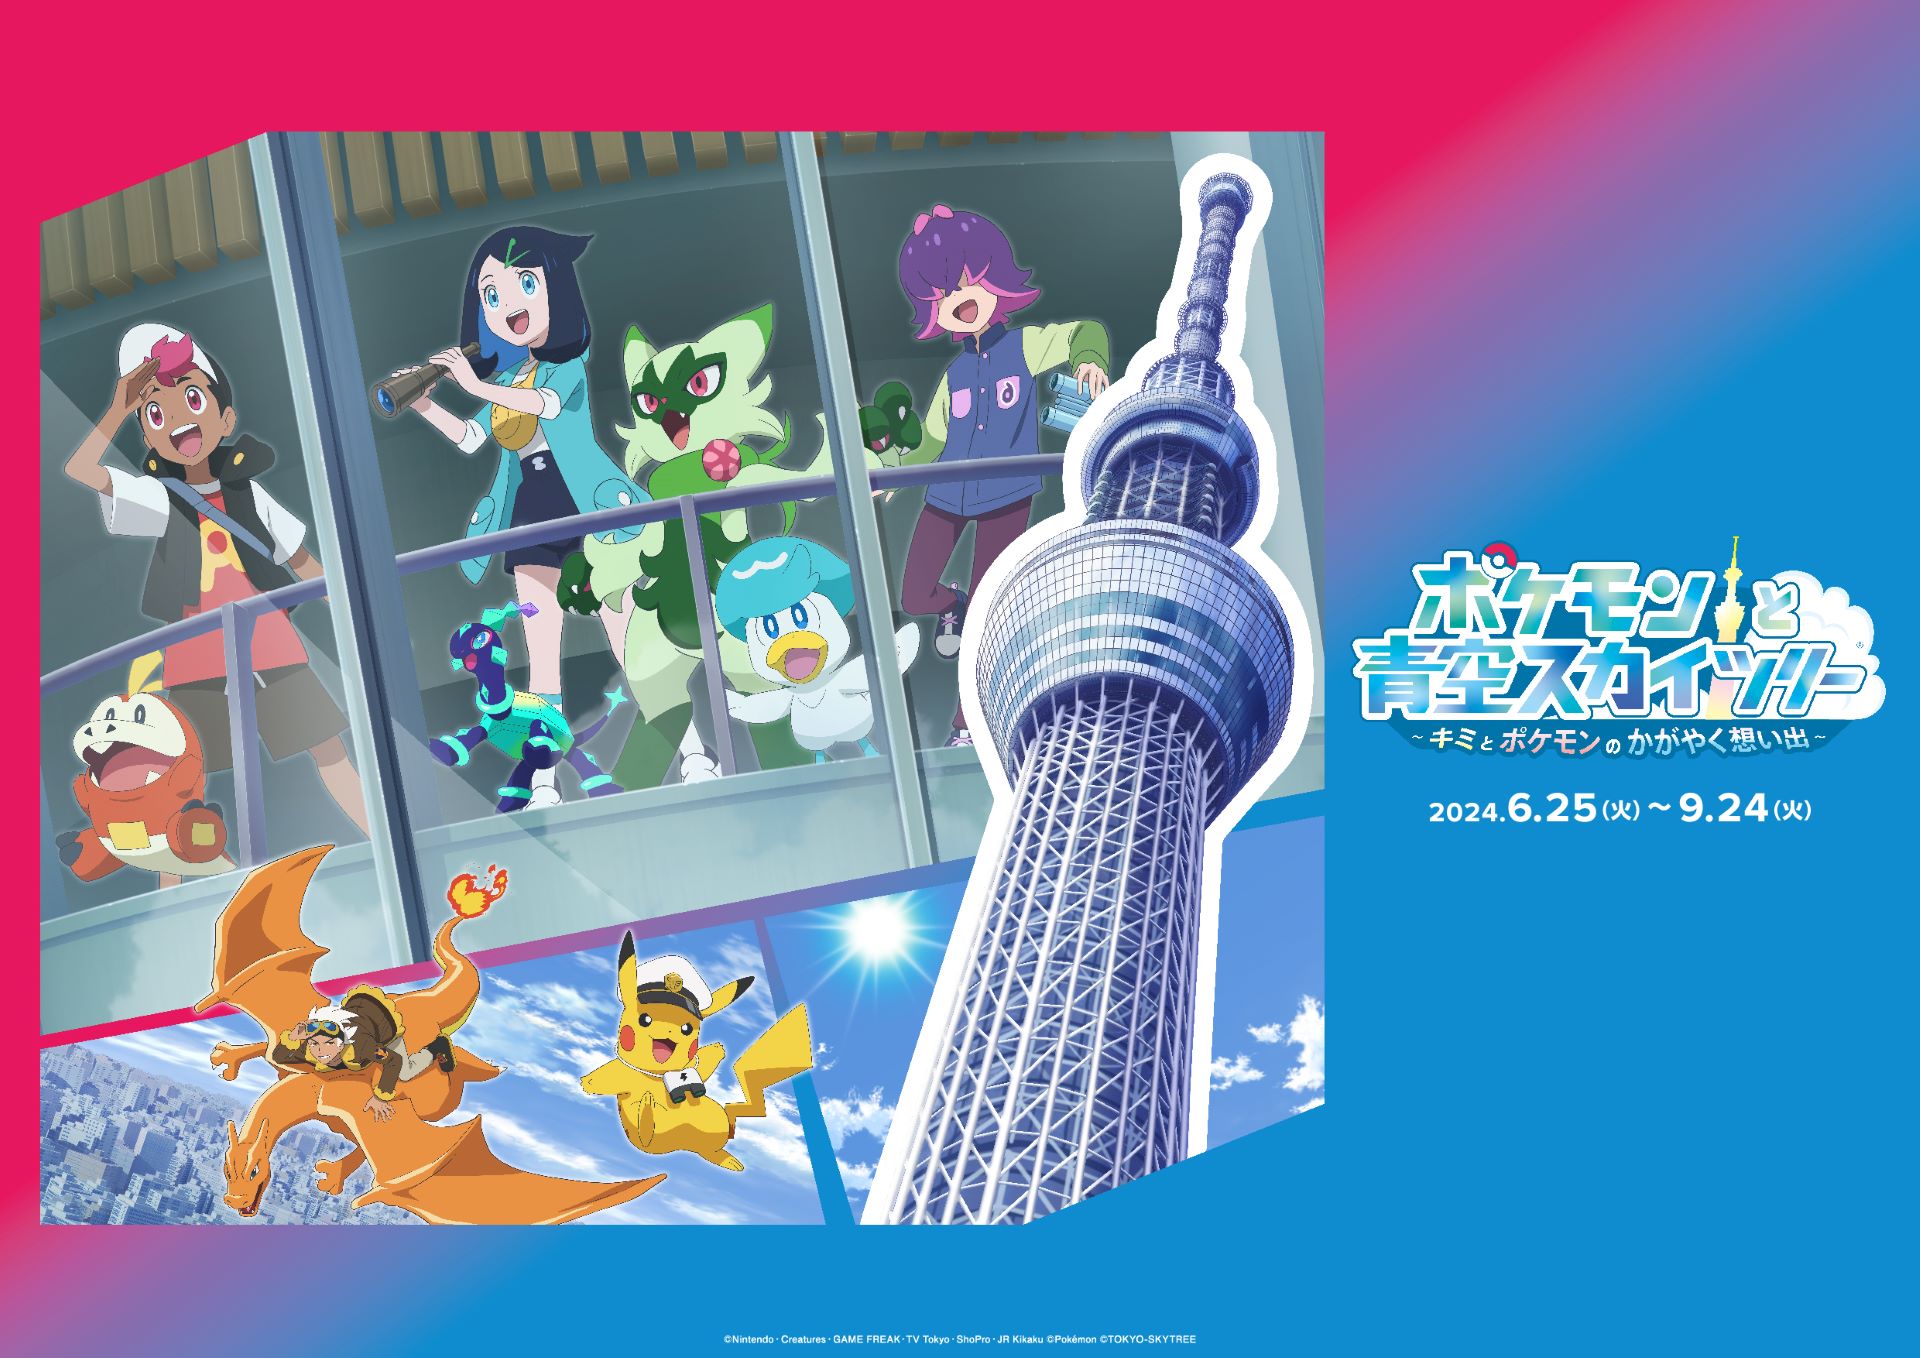 ข่าวเอเชีย - “โตเกียวสกายทรี” จับมือทีวีอนิเมะ “โปเกมอน” จัดงานร่วมกันเป็นครั้งแรกในชื่อ “Pokemon Horizons : The Series 'POKEMON in TOKYO SKYTREE'” ตั้งแต่วันที่ 25 มิถุนายน ถึง 24 กันยายน 2567